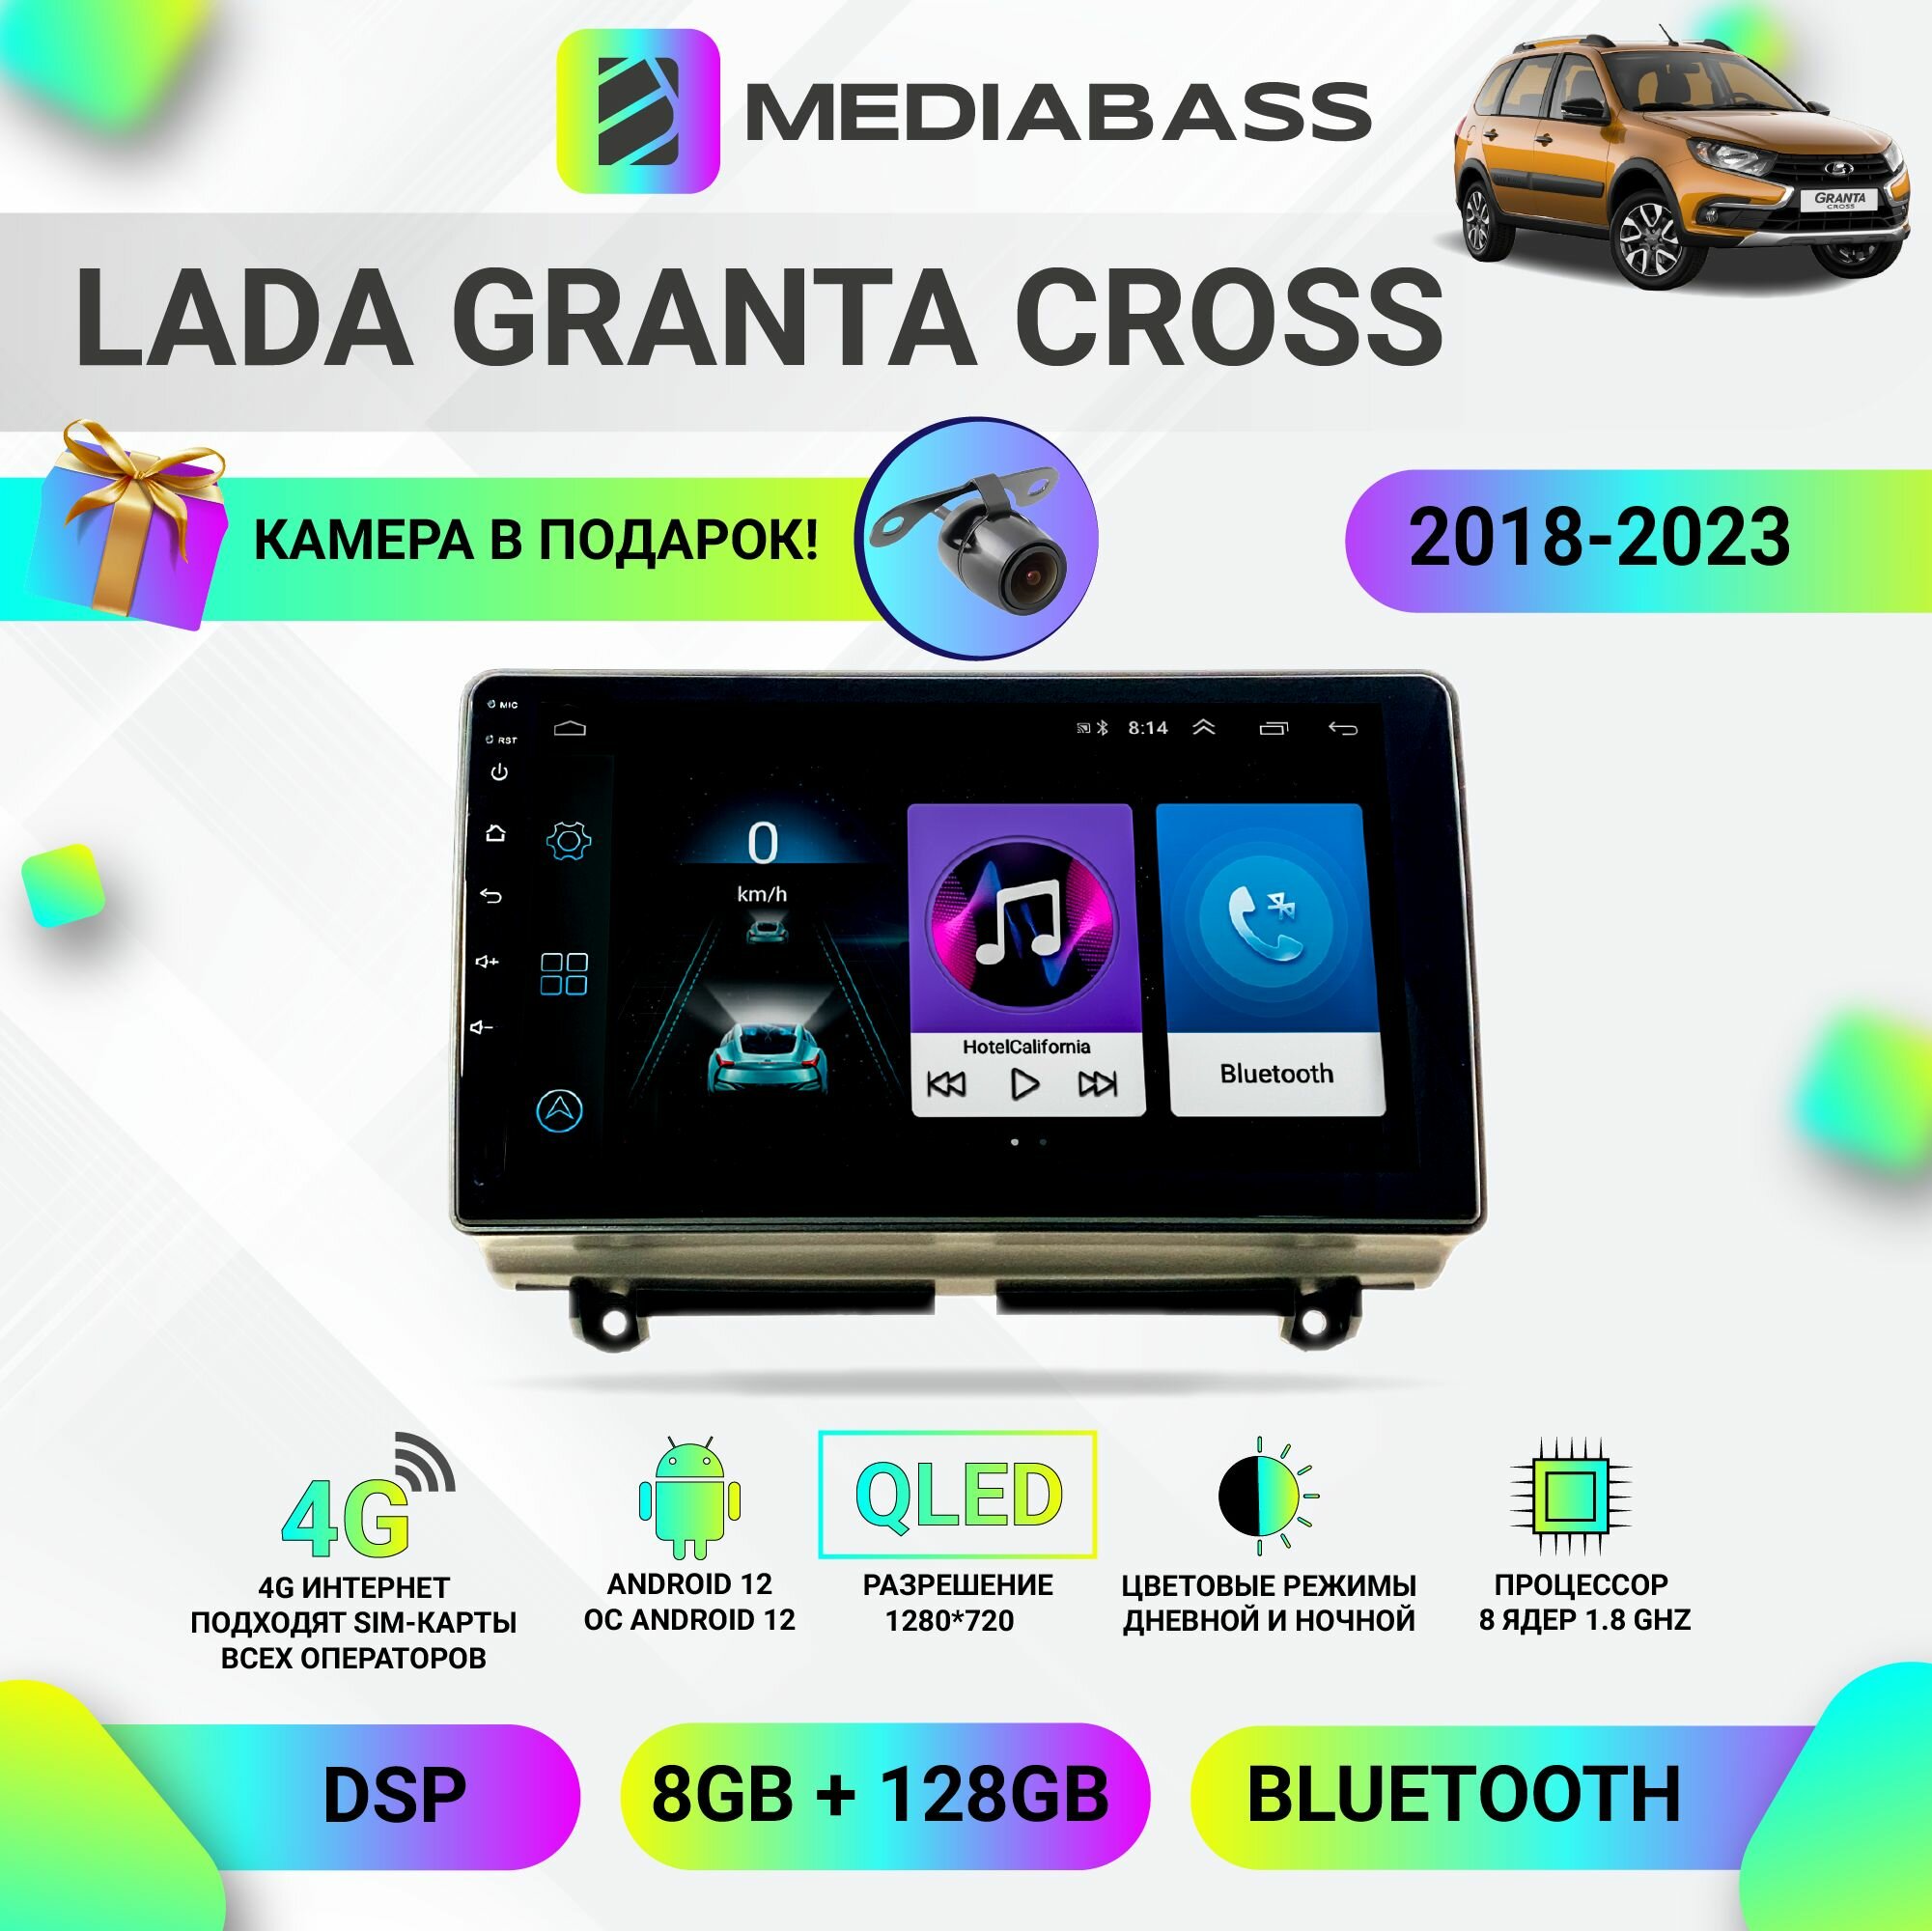 Автомагнитола MEDIABASS M8 Lada Granta Cross 2018-2023, Android 12, 8/128ГБ, 8-ядерный процессор, DSP, 4G модем, голосовое управление, чип-усилитель TDA7851 Лада Гранта